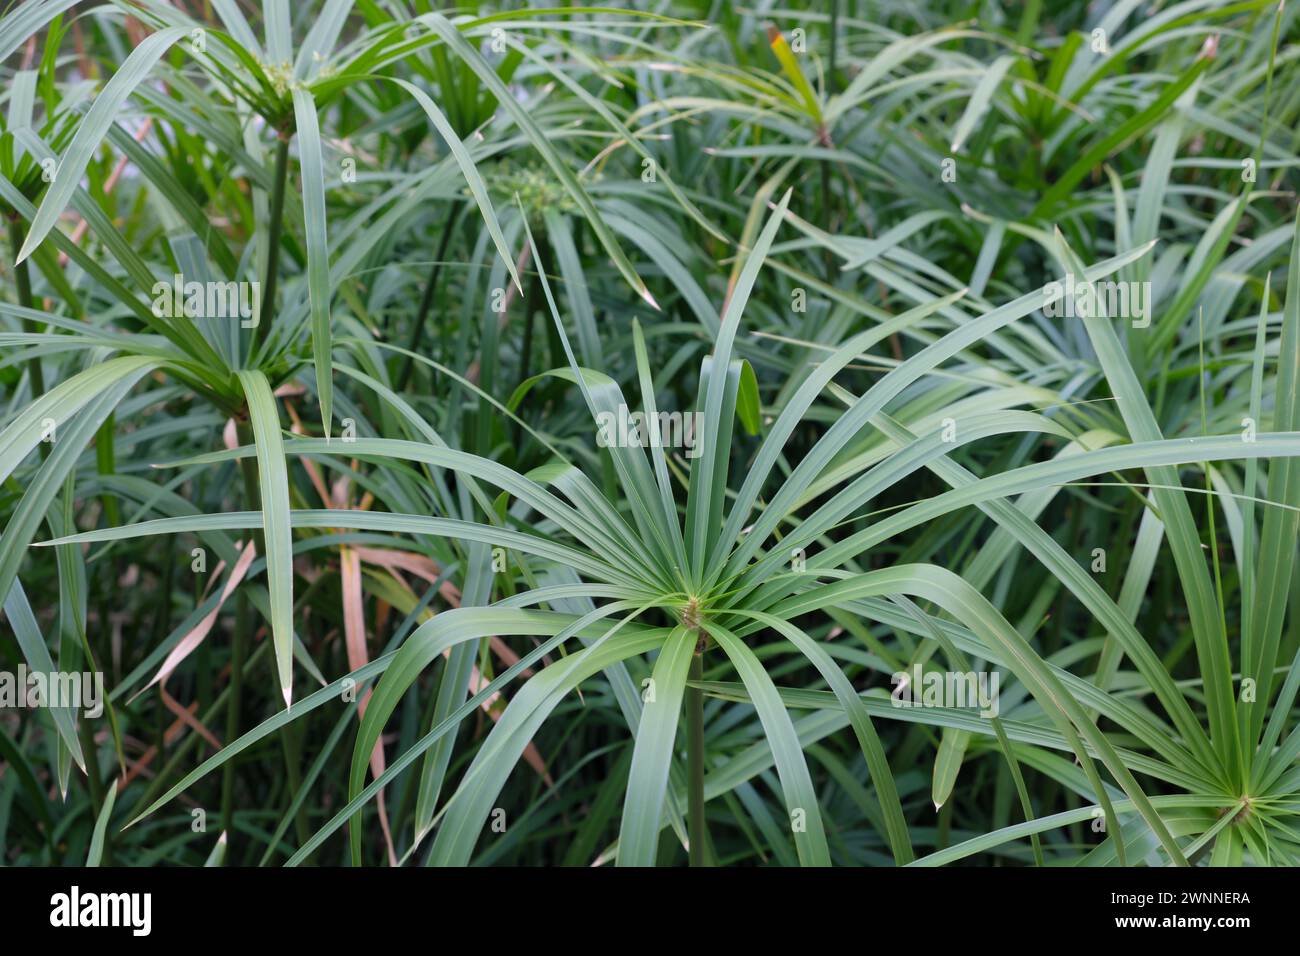 Cyperus alternifolius, the umbrella papyrus, umbrella sedge or umbrella palm. Stock Photo